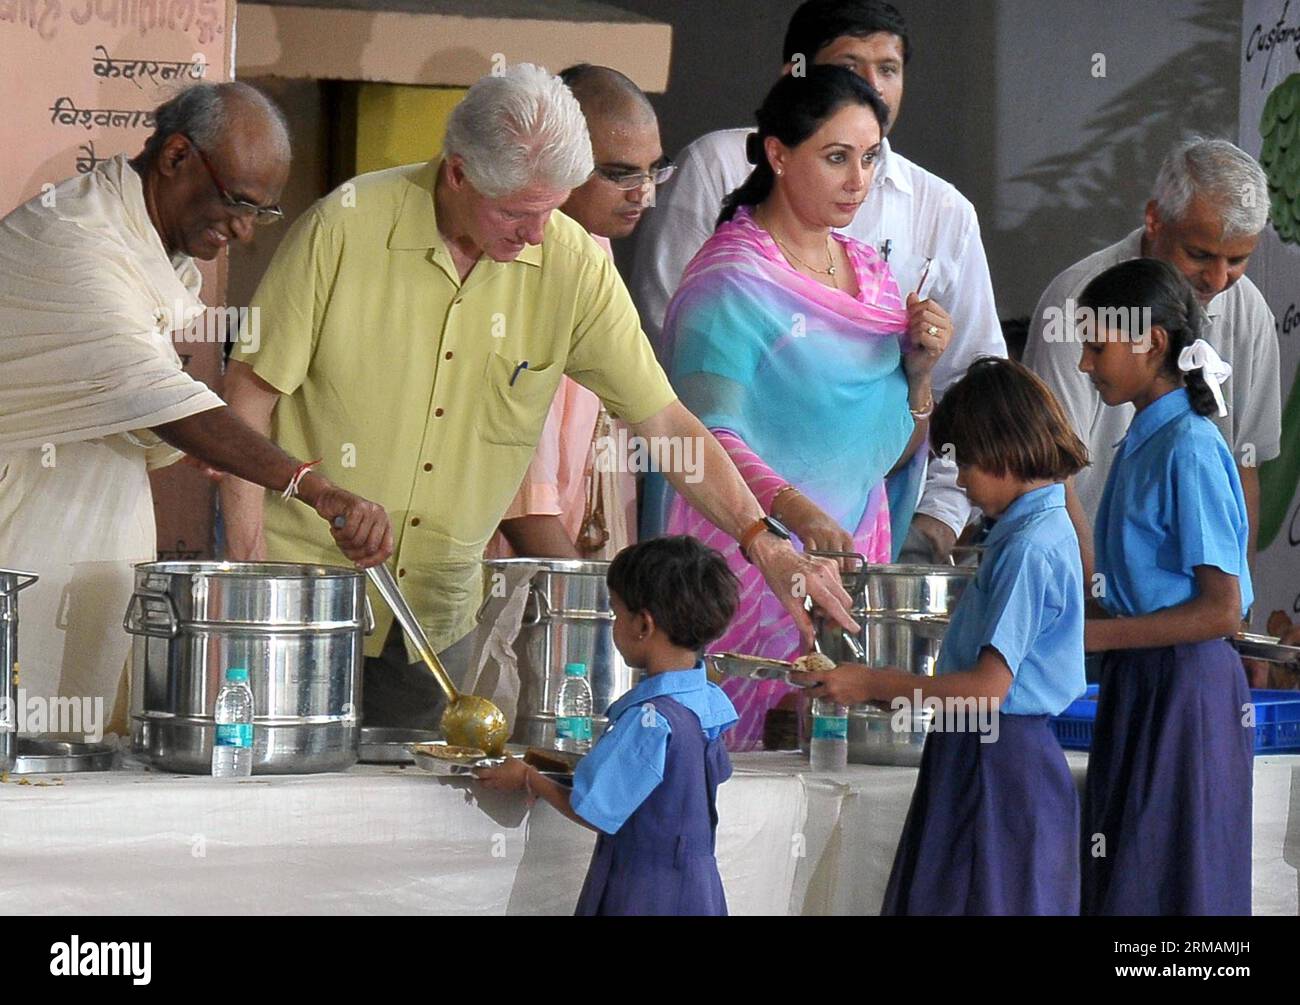 Der ehemalige US-Präsident Bill Clinton (2. L) serviert Essen für Studenten in Jaipur, Indien, 16. Juli 2014. Der frühere US-Präsident Bill Clinton Tuesday kam in Jaipur, der Hauptstadt des westindischen Bundesstaates Rajasthan, an, um einen Blick auf einen von NGO betriebenen Mittagsmenüplan für Schulkinder zu werfen. (Xinhua/Stringer) (zjy) INDIA-JAIPUR-U.S.-CLINTON-VISIT PUBLICATIONxNOTxINxCHN ehemaliger US-Präsident Bill Clinton Administration 2. L Serves Food for Students in Jaipur Indien 16. Juli 2014 ehemaliger US-Präsident Bill Clinton Administration Dienstag traf in Jaipur ein, der Hauptstadt des westindischen Staates Raja Stockfoto